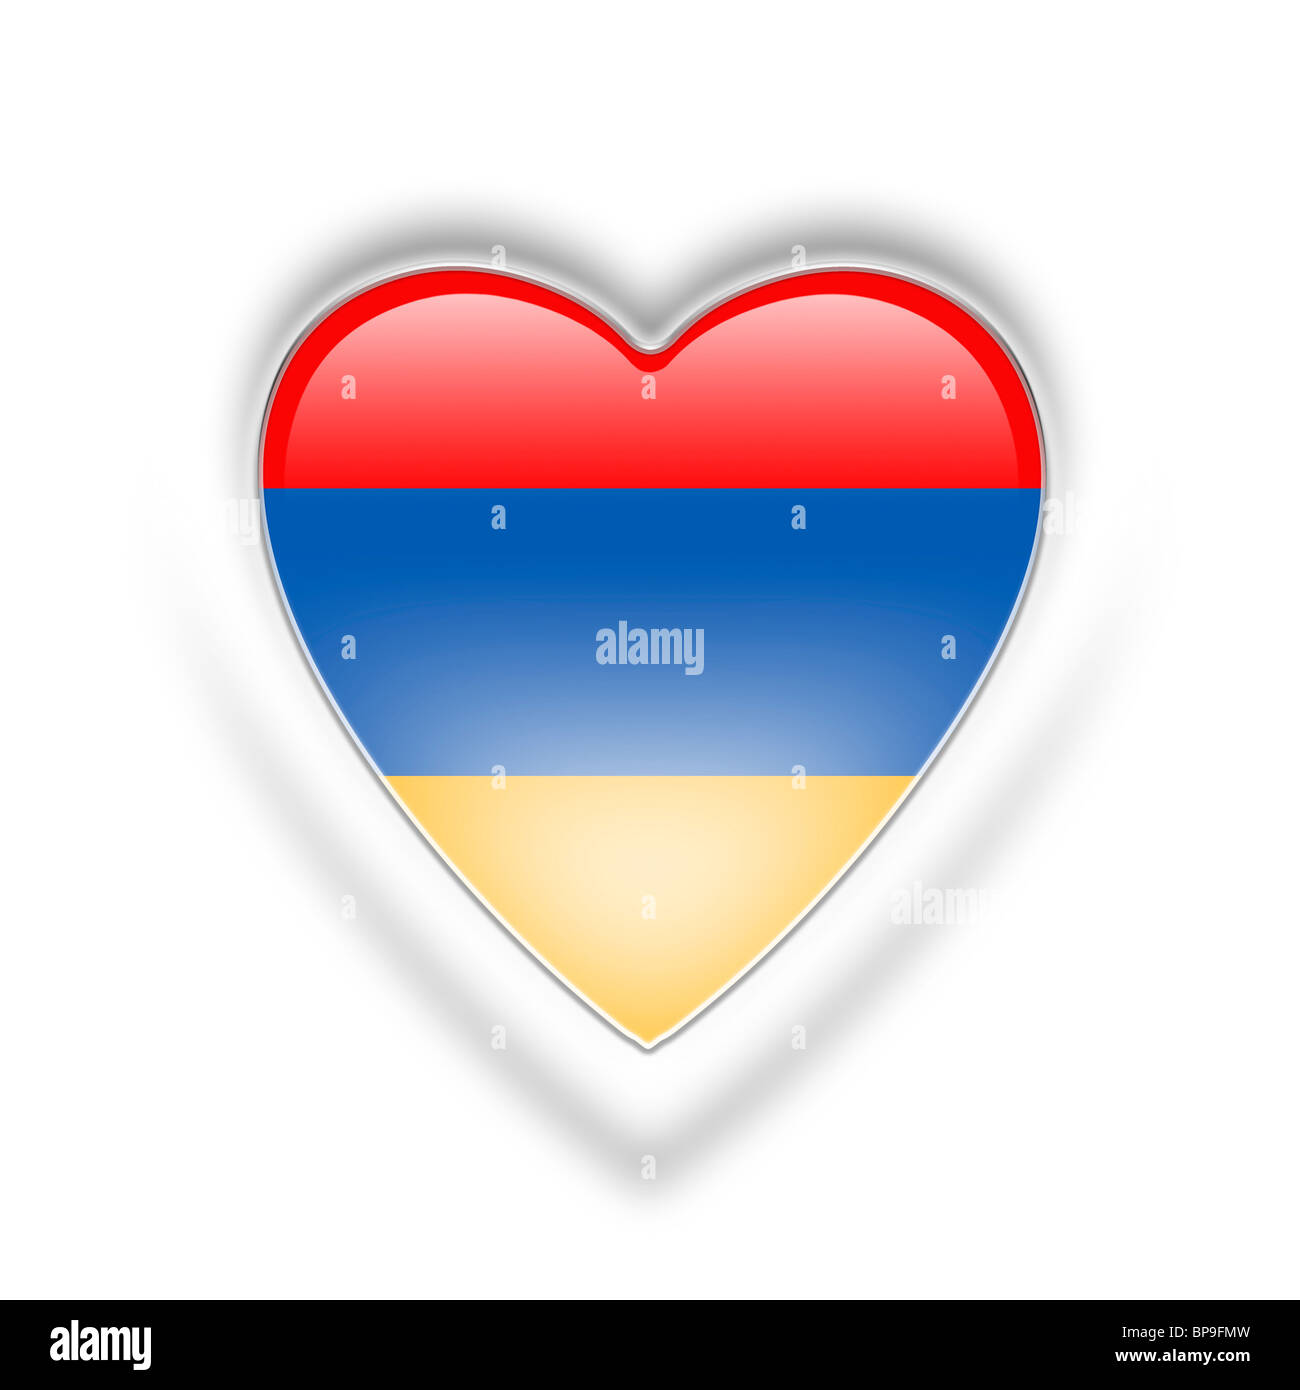 Armenia flag Stock Photo